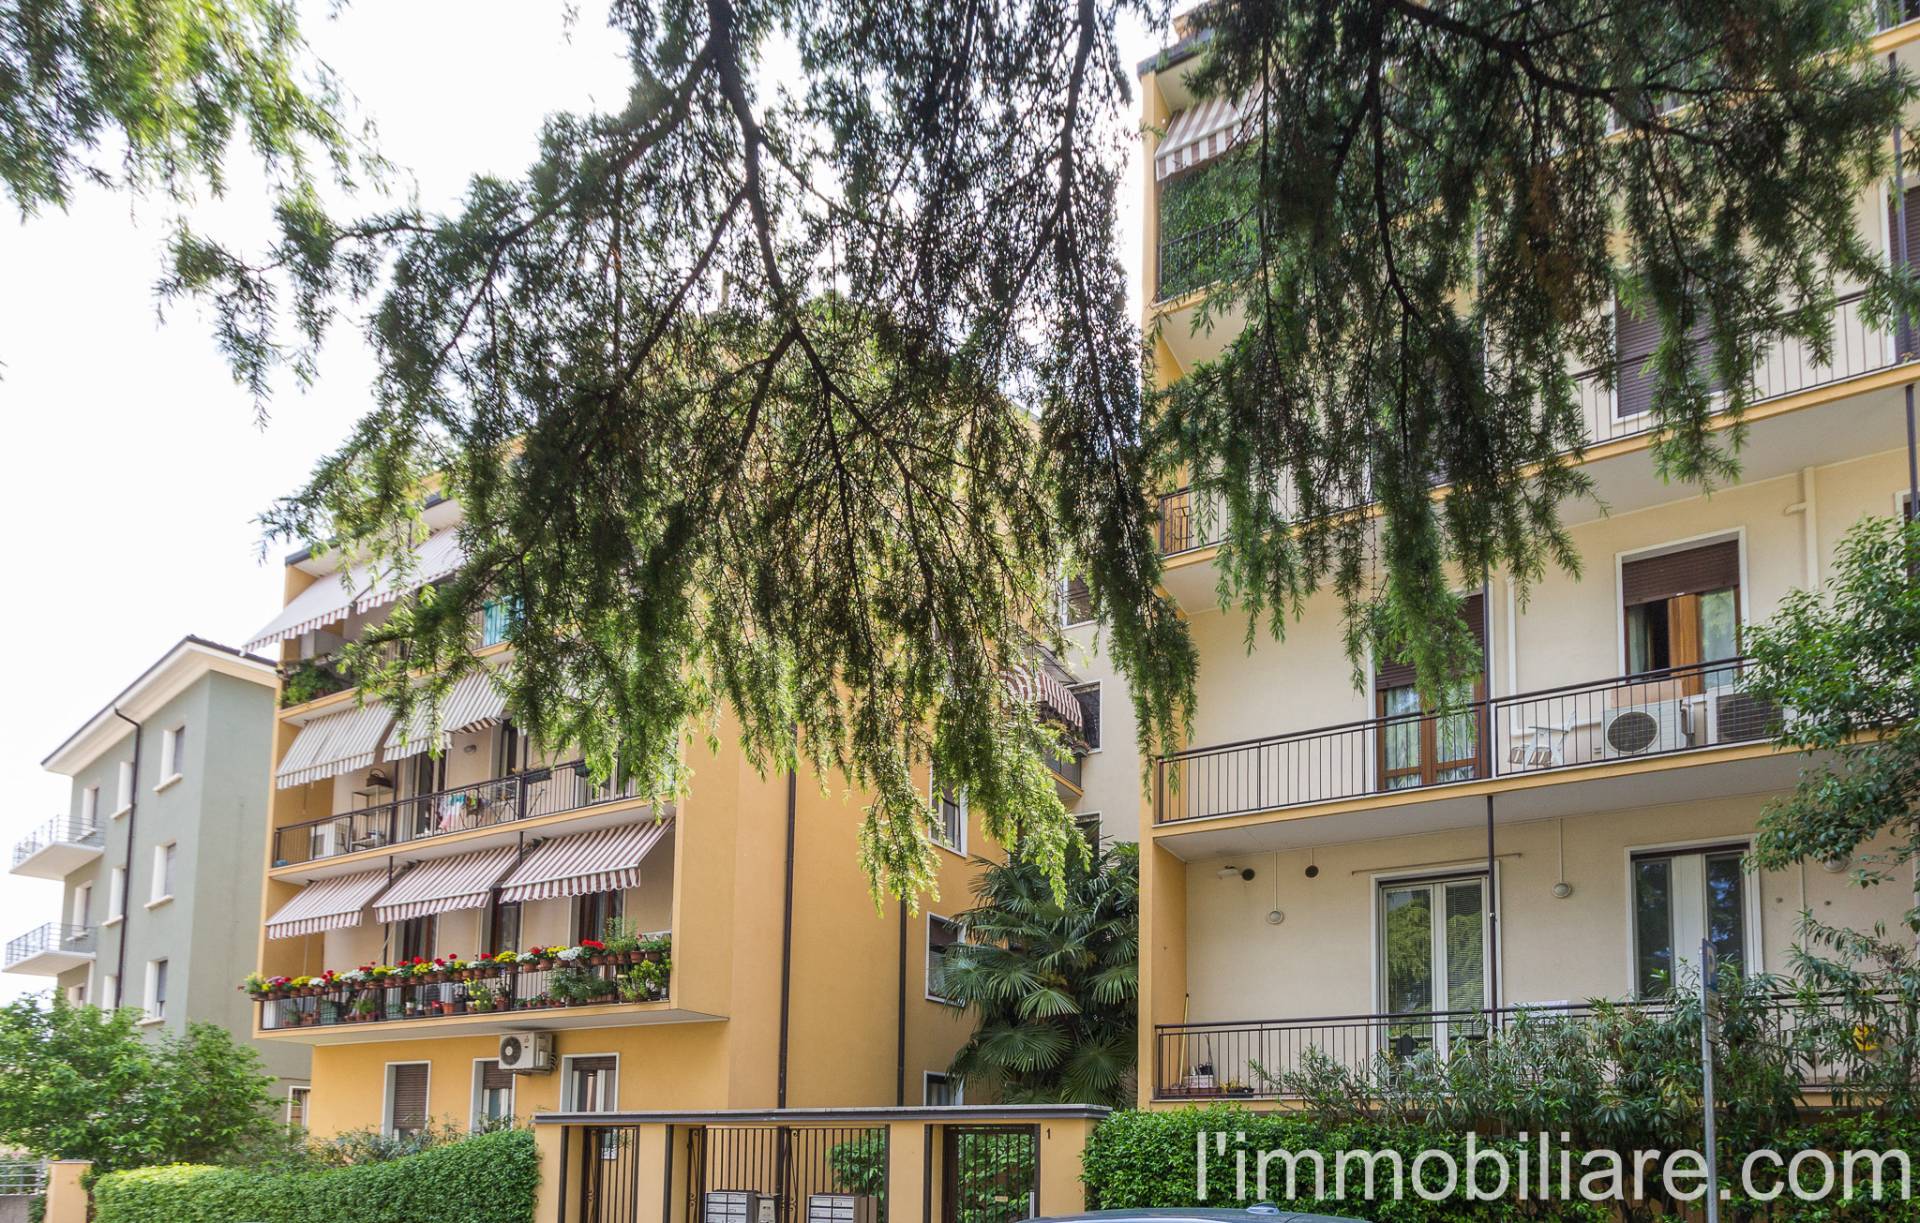 Appartamento in Vendita a Verona: 2 locali, 55 mq - Foto 23